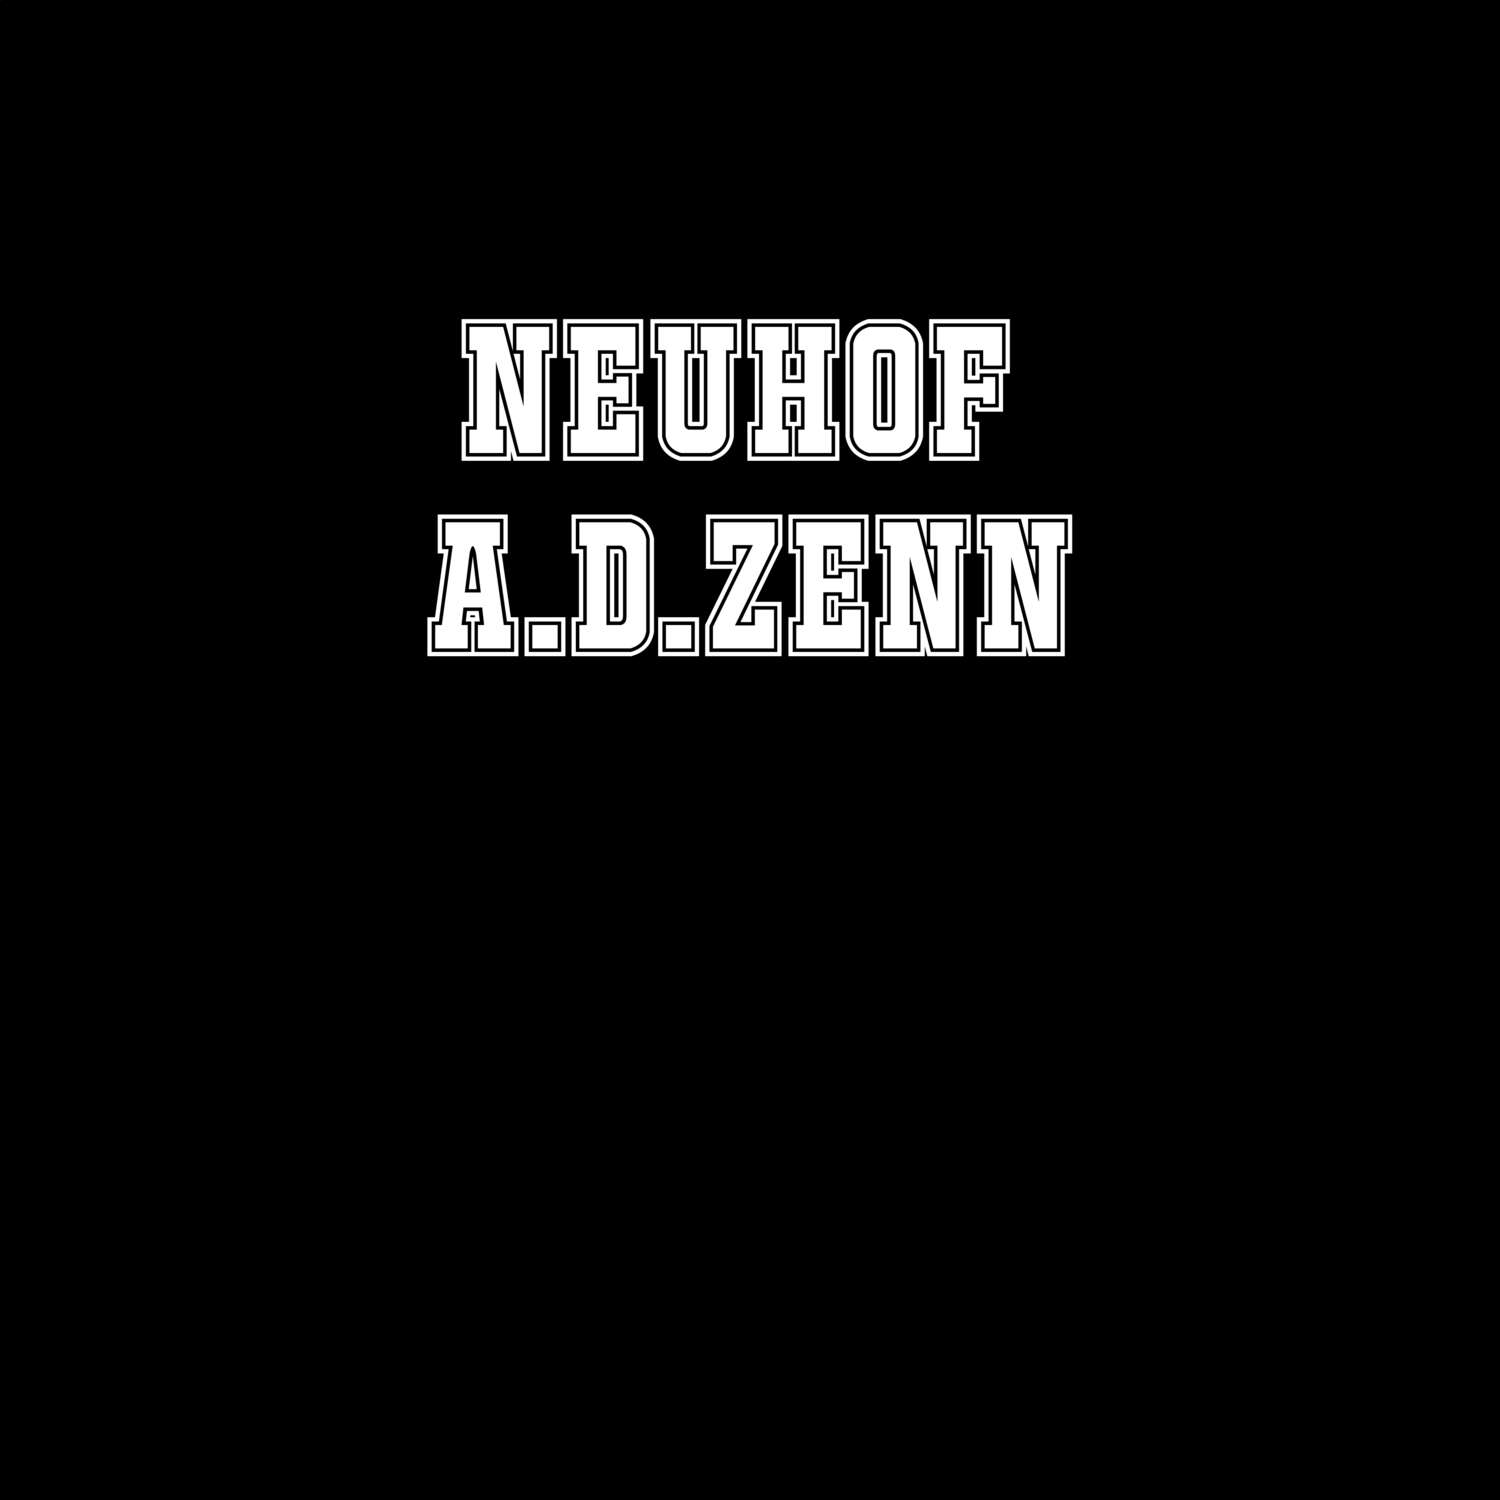 Neuhof a.d.Zenn T-Shirt »Classic«